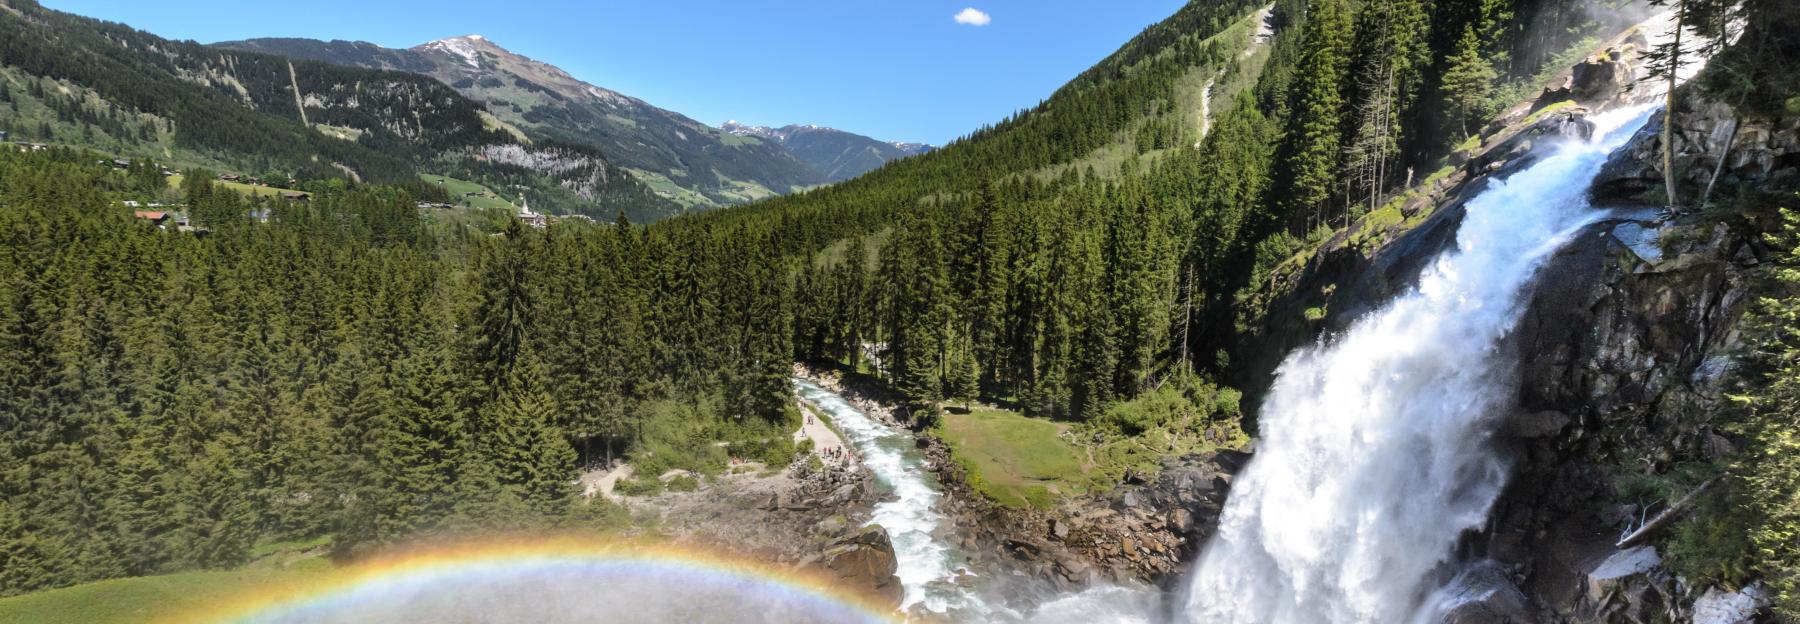 Krimmler Wasserfälle mit Regenbogen